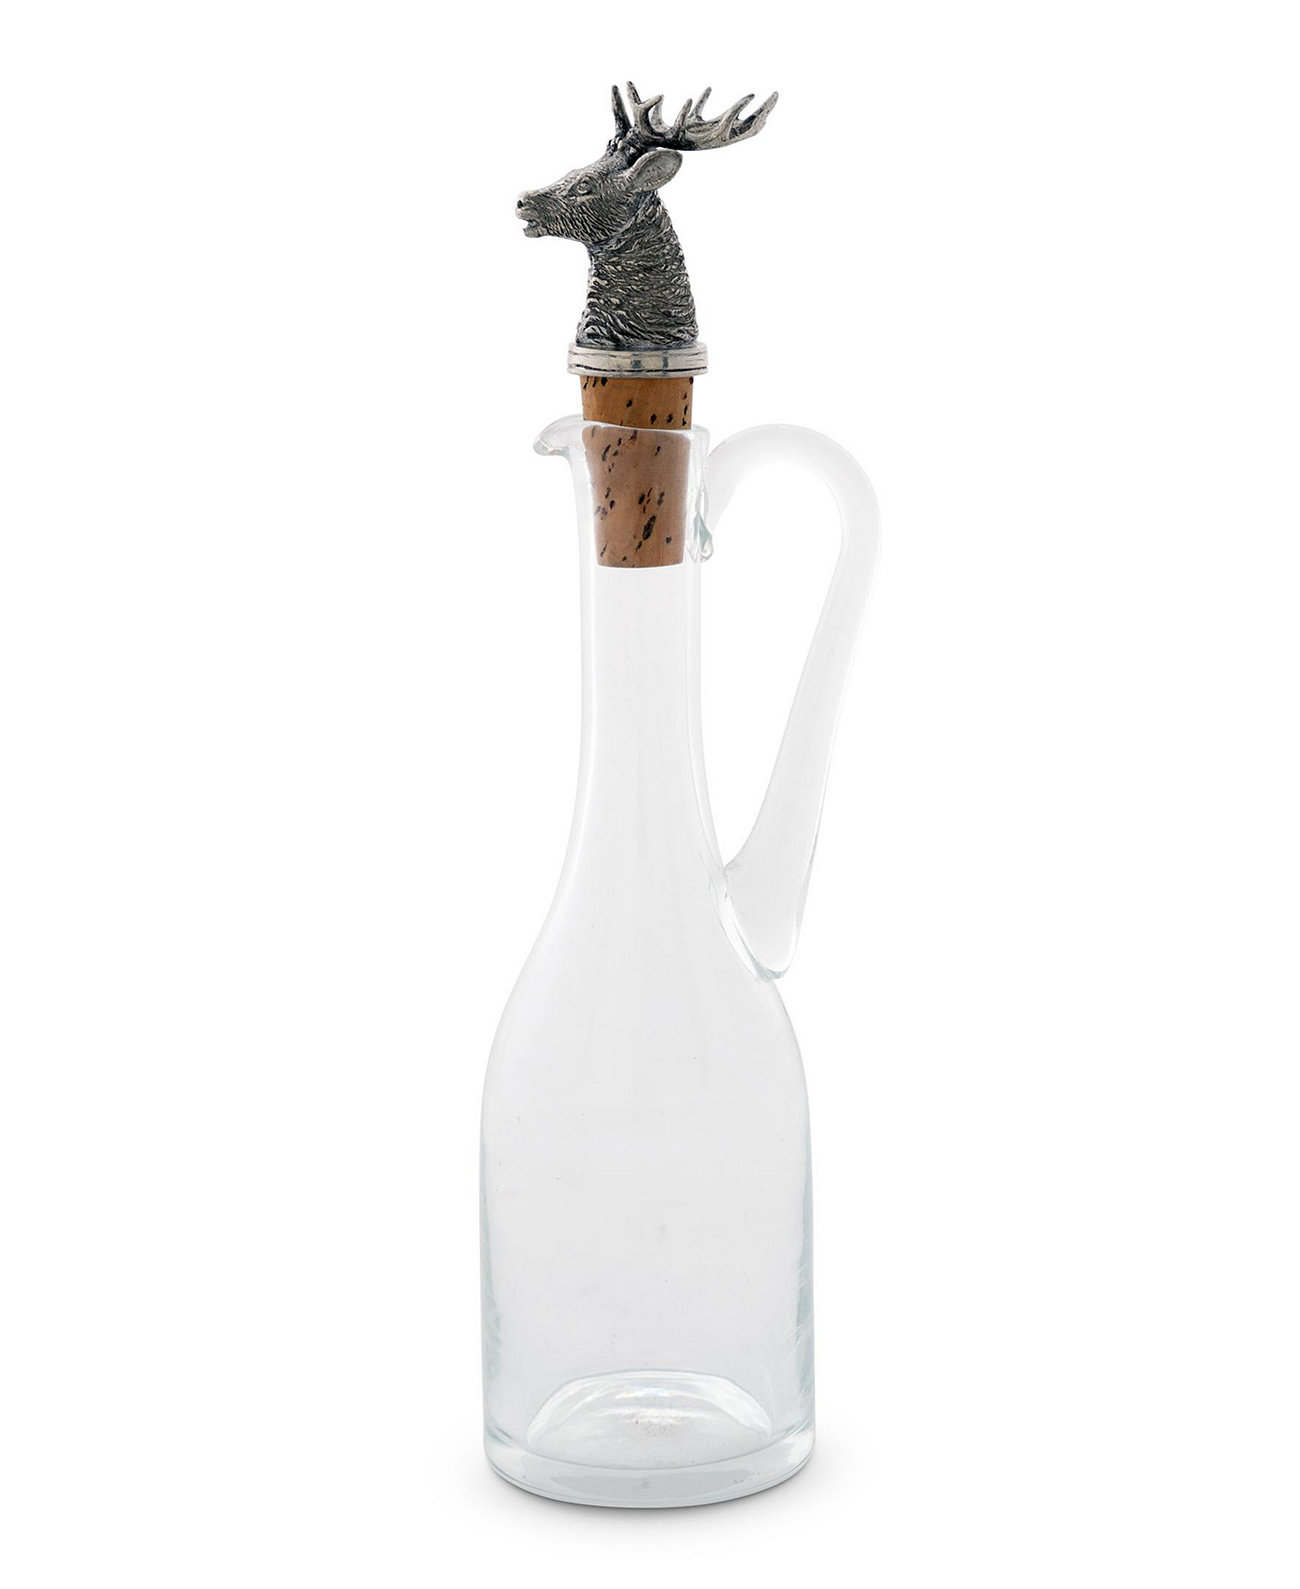 Выдувная стеклянная бутылка на 5 унций с пробкой и цельной оловянной головой лося Vagabond House